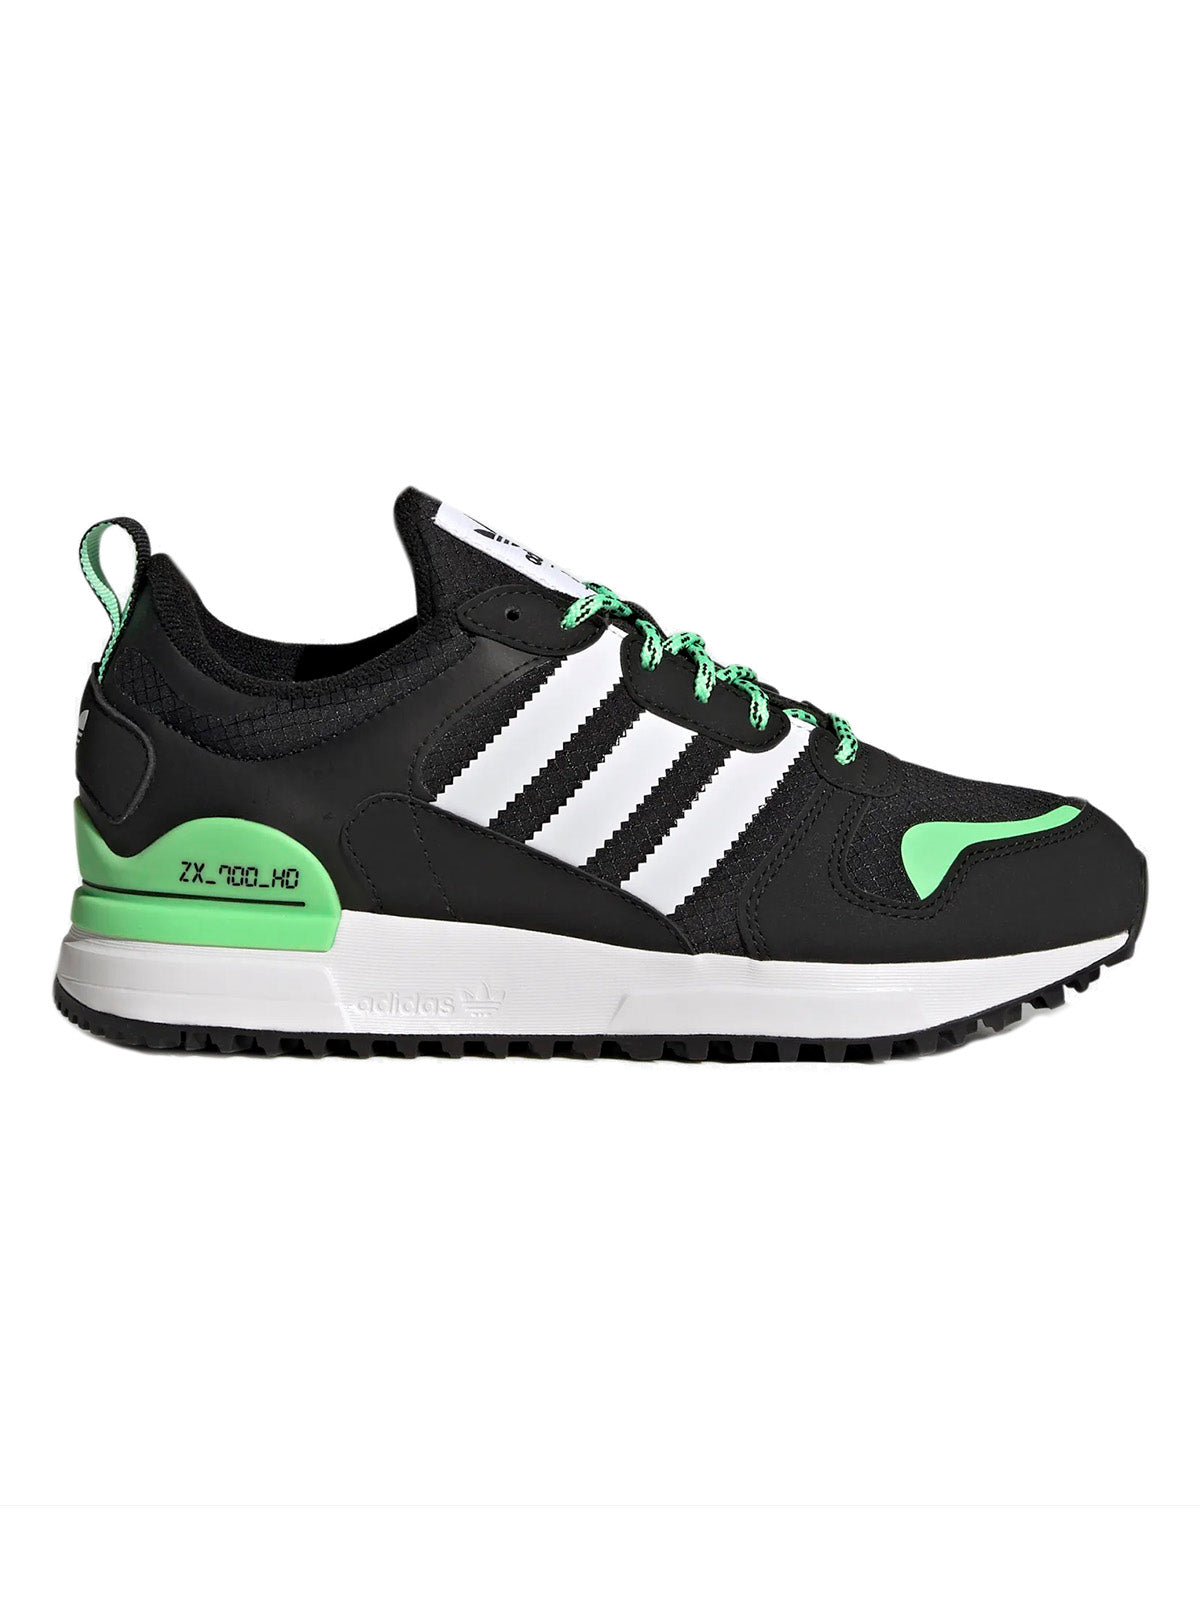 Adidas Boy Sneaker - Adidas Zx 700 Hd J - Black